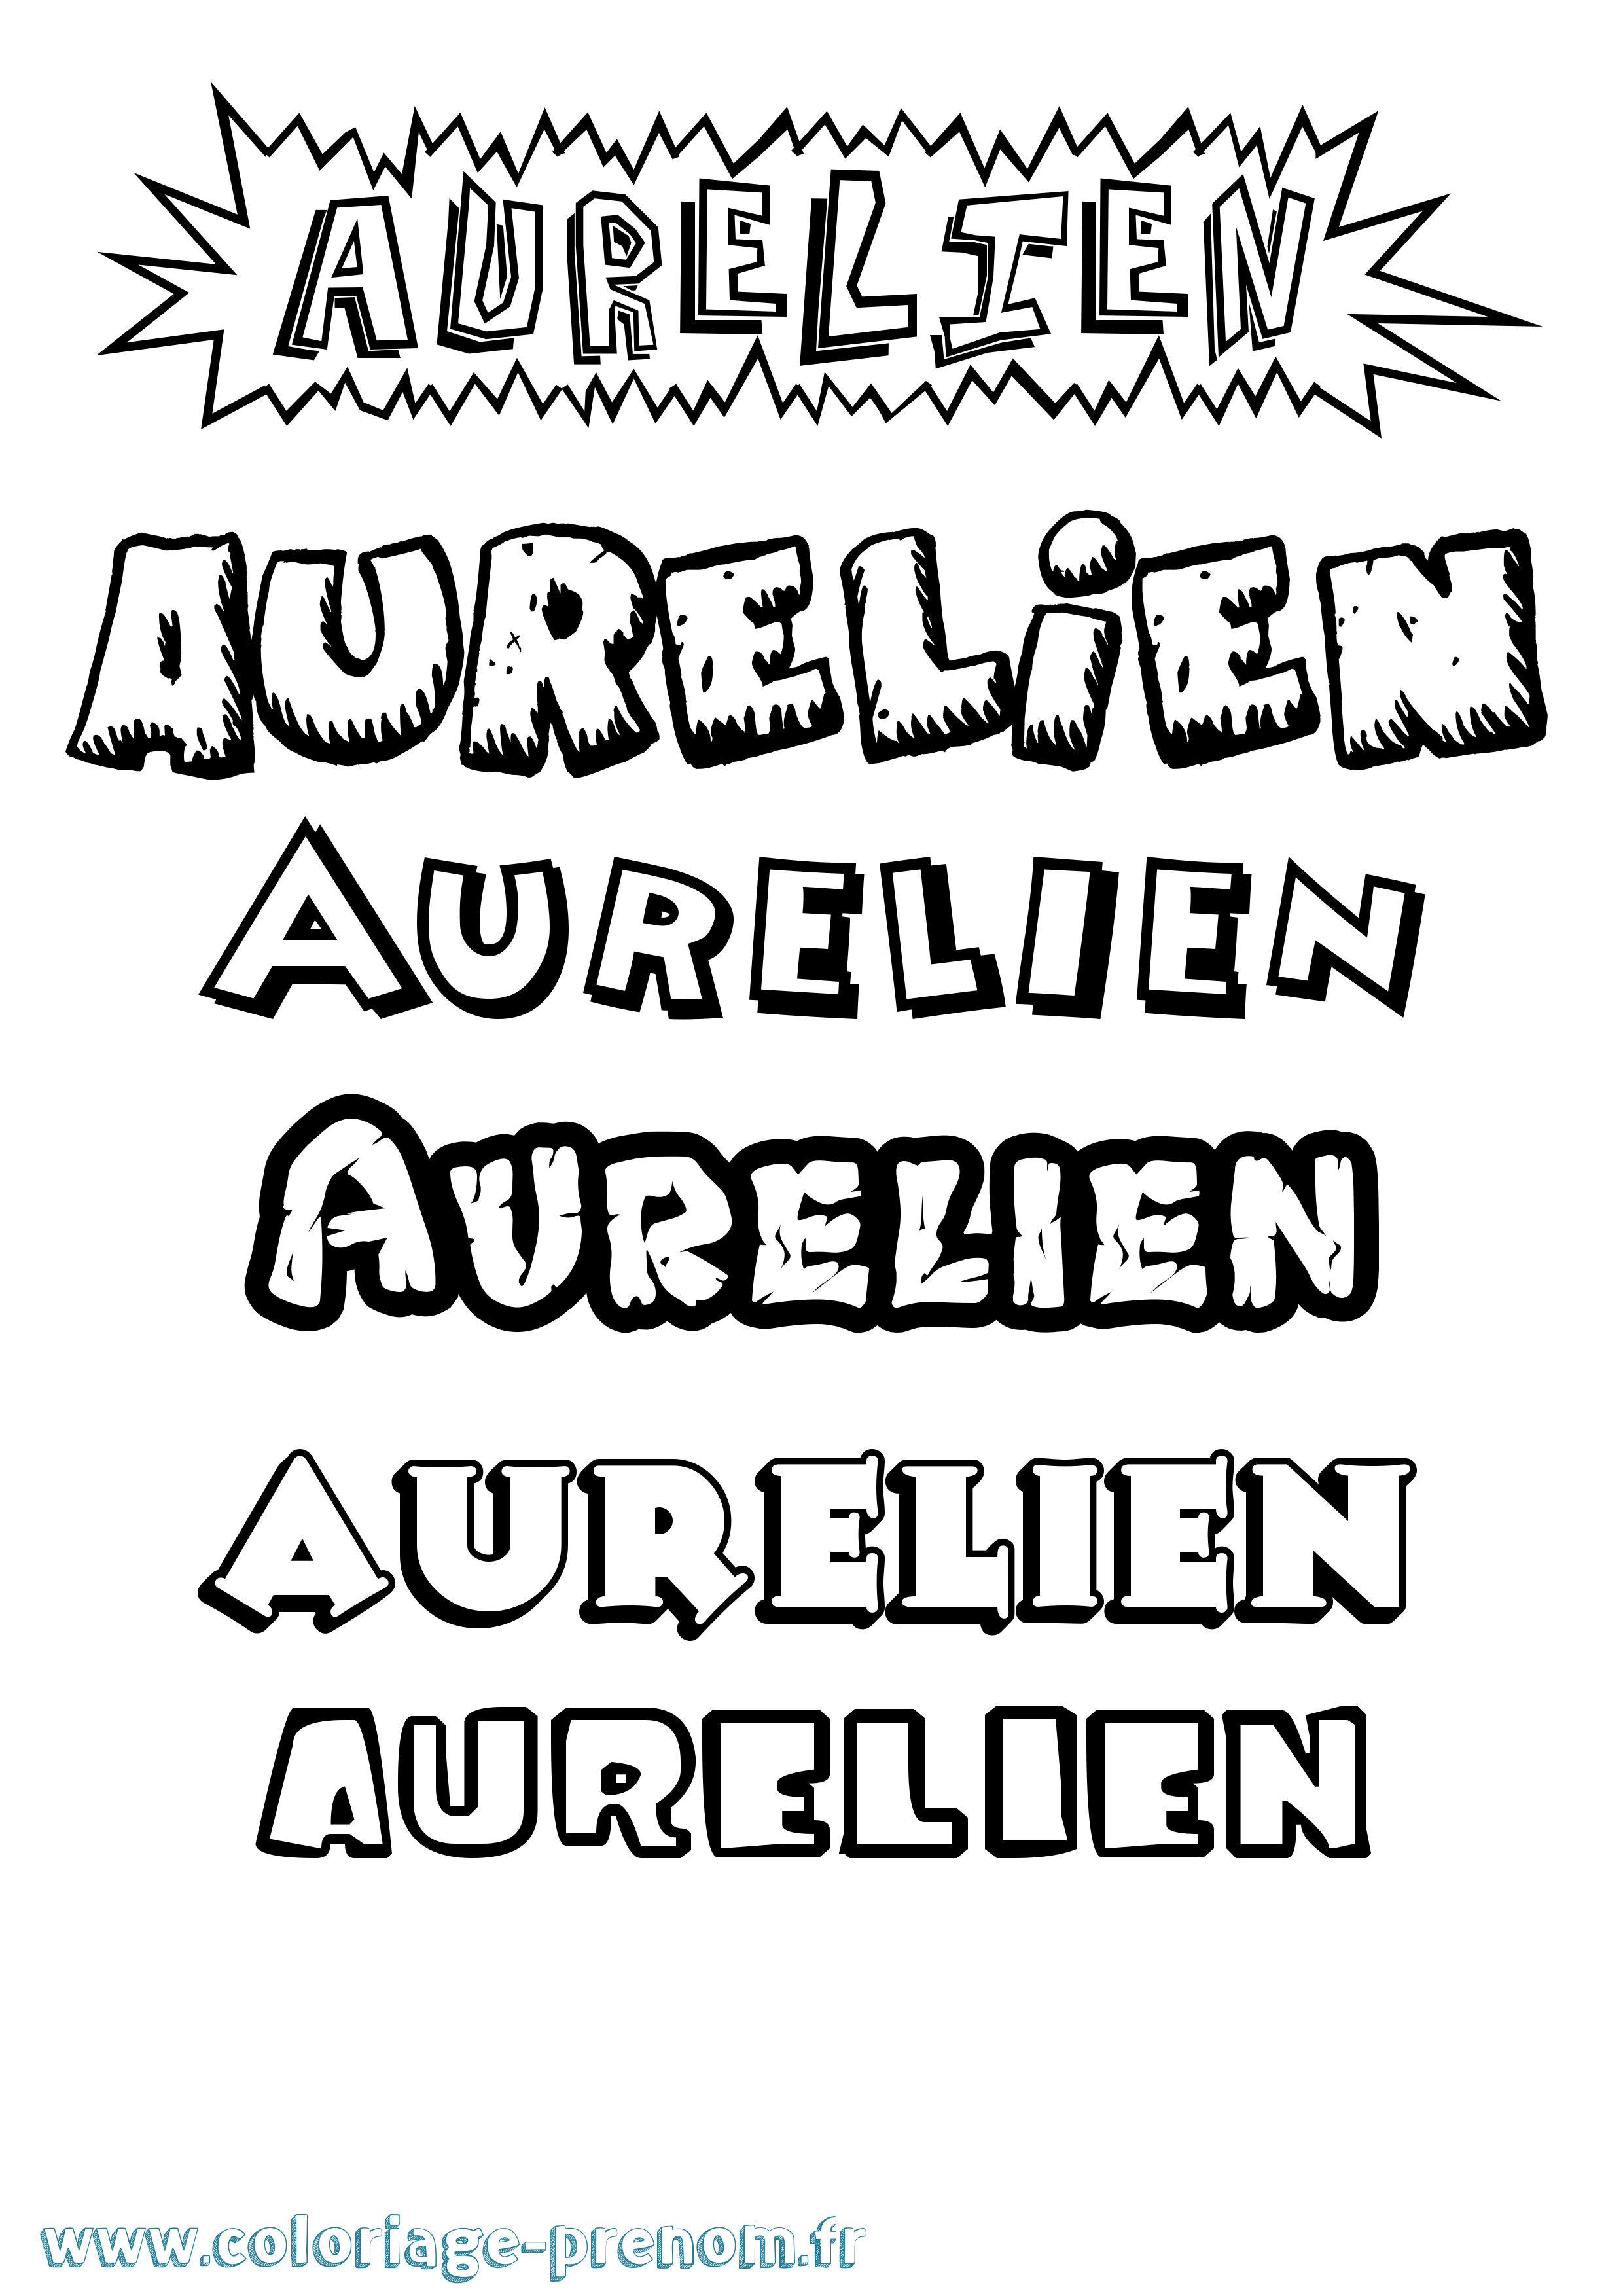 Coloriage prénom Aurelien